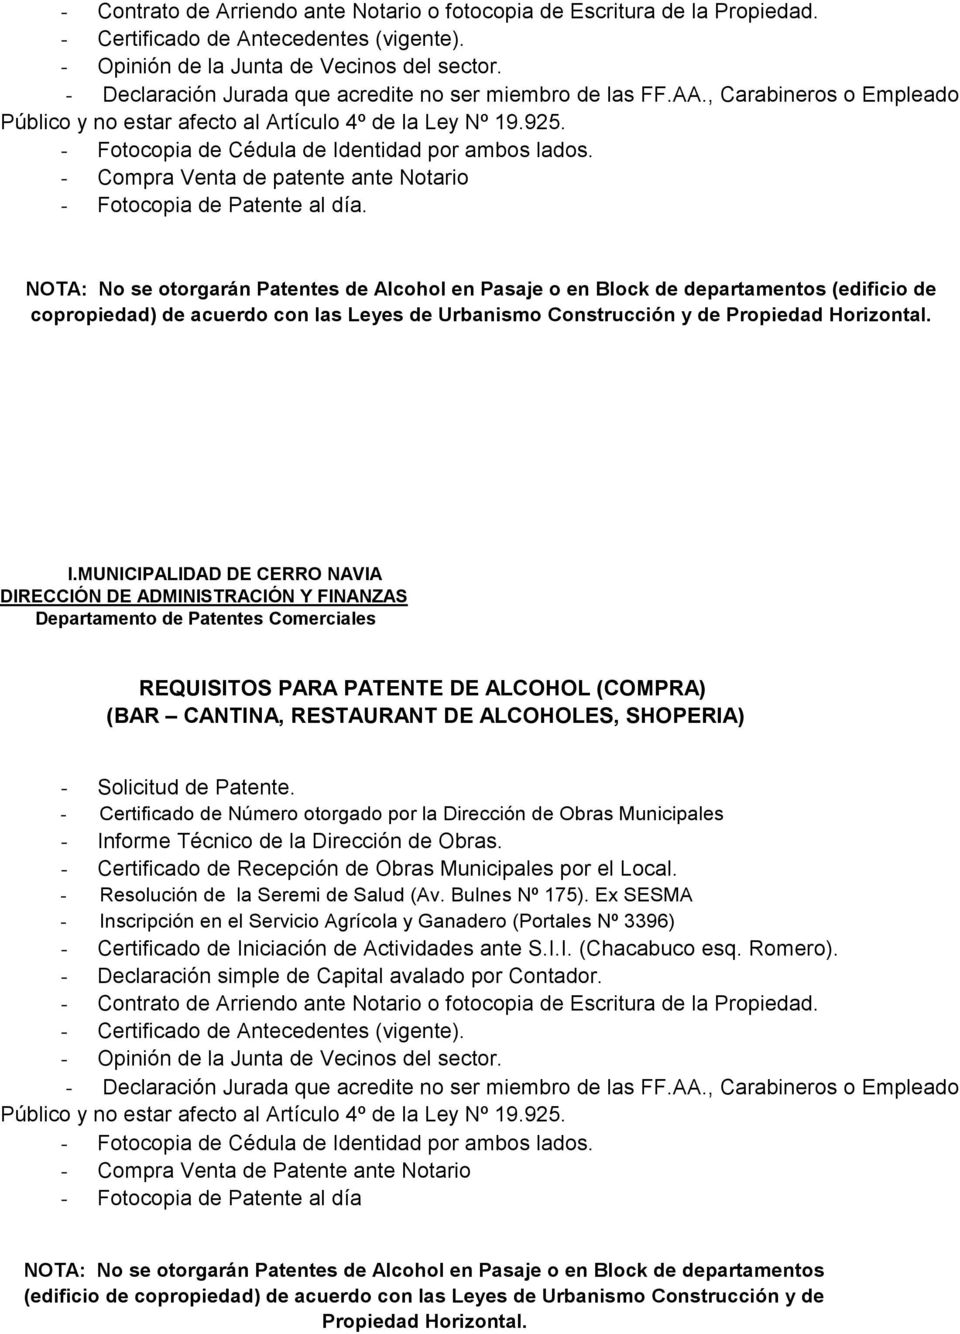 NOTA: No se otorgarán Patentes de Alcohol en Pasaje o en Block de departamentos (edificio de copropiedad) de acuerdo con las Leyes de Urbanismo Construcción y de Propiedad Horizontal.